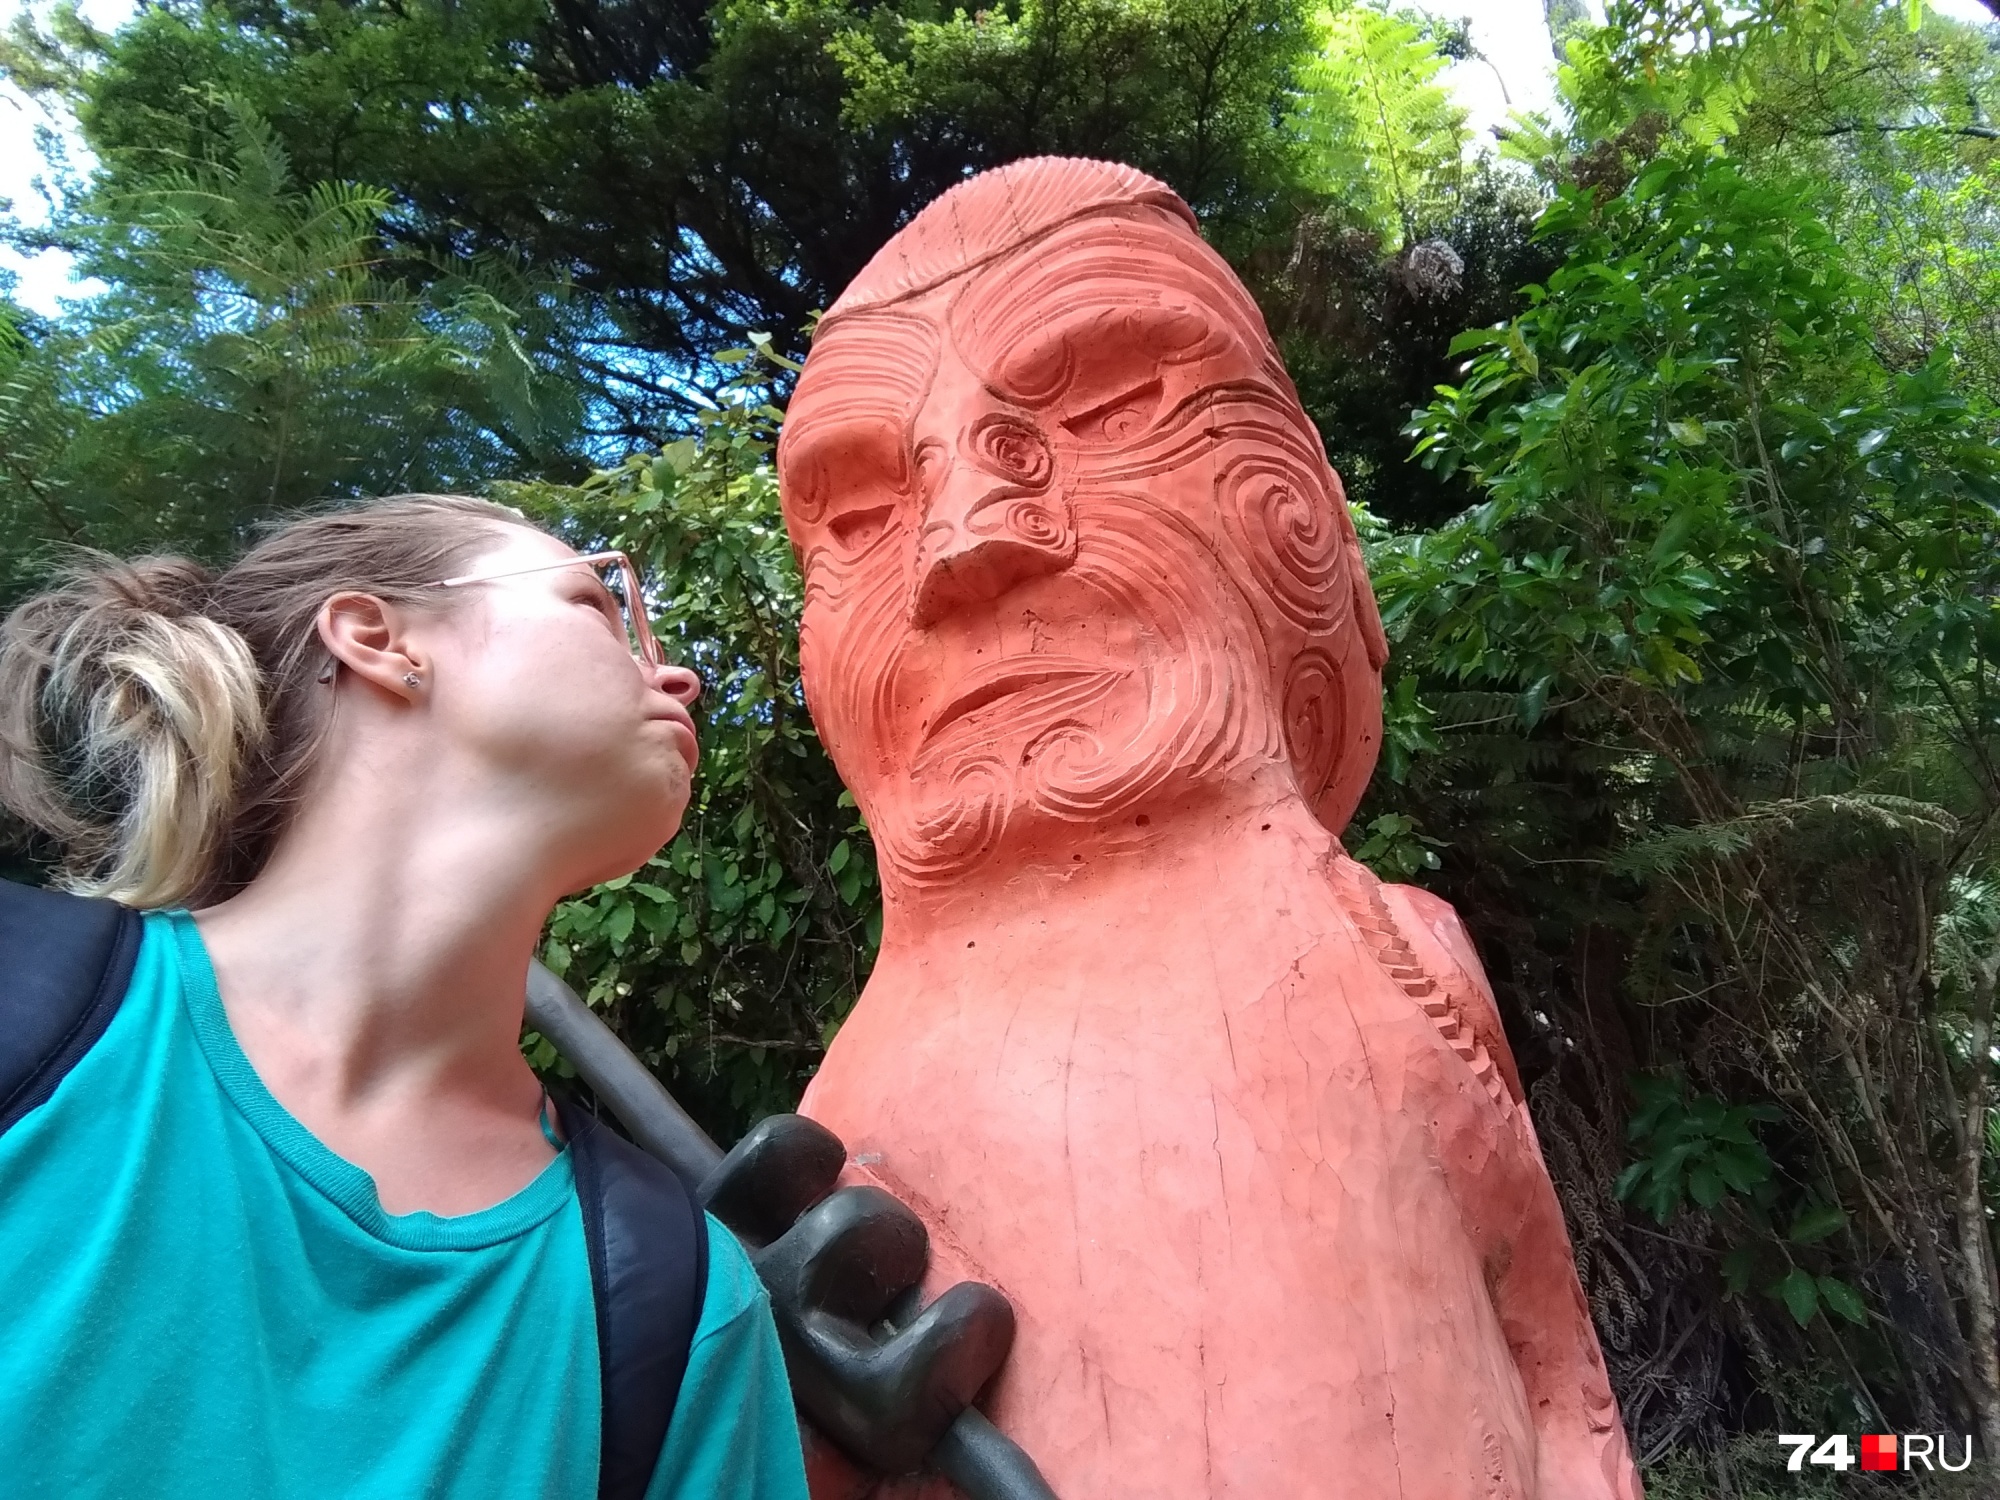 Наташа с фигурой маорийского воина, который борется за свои духовные ценности